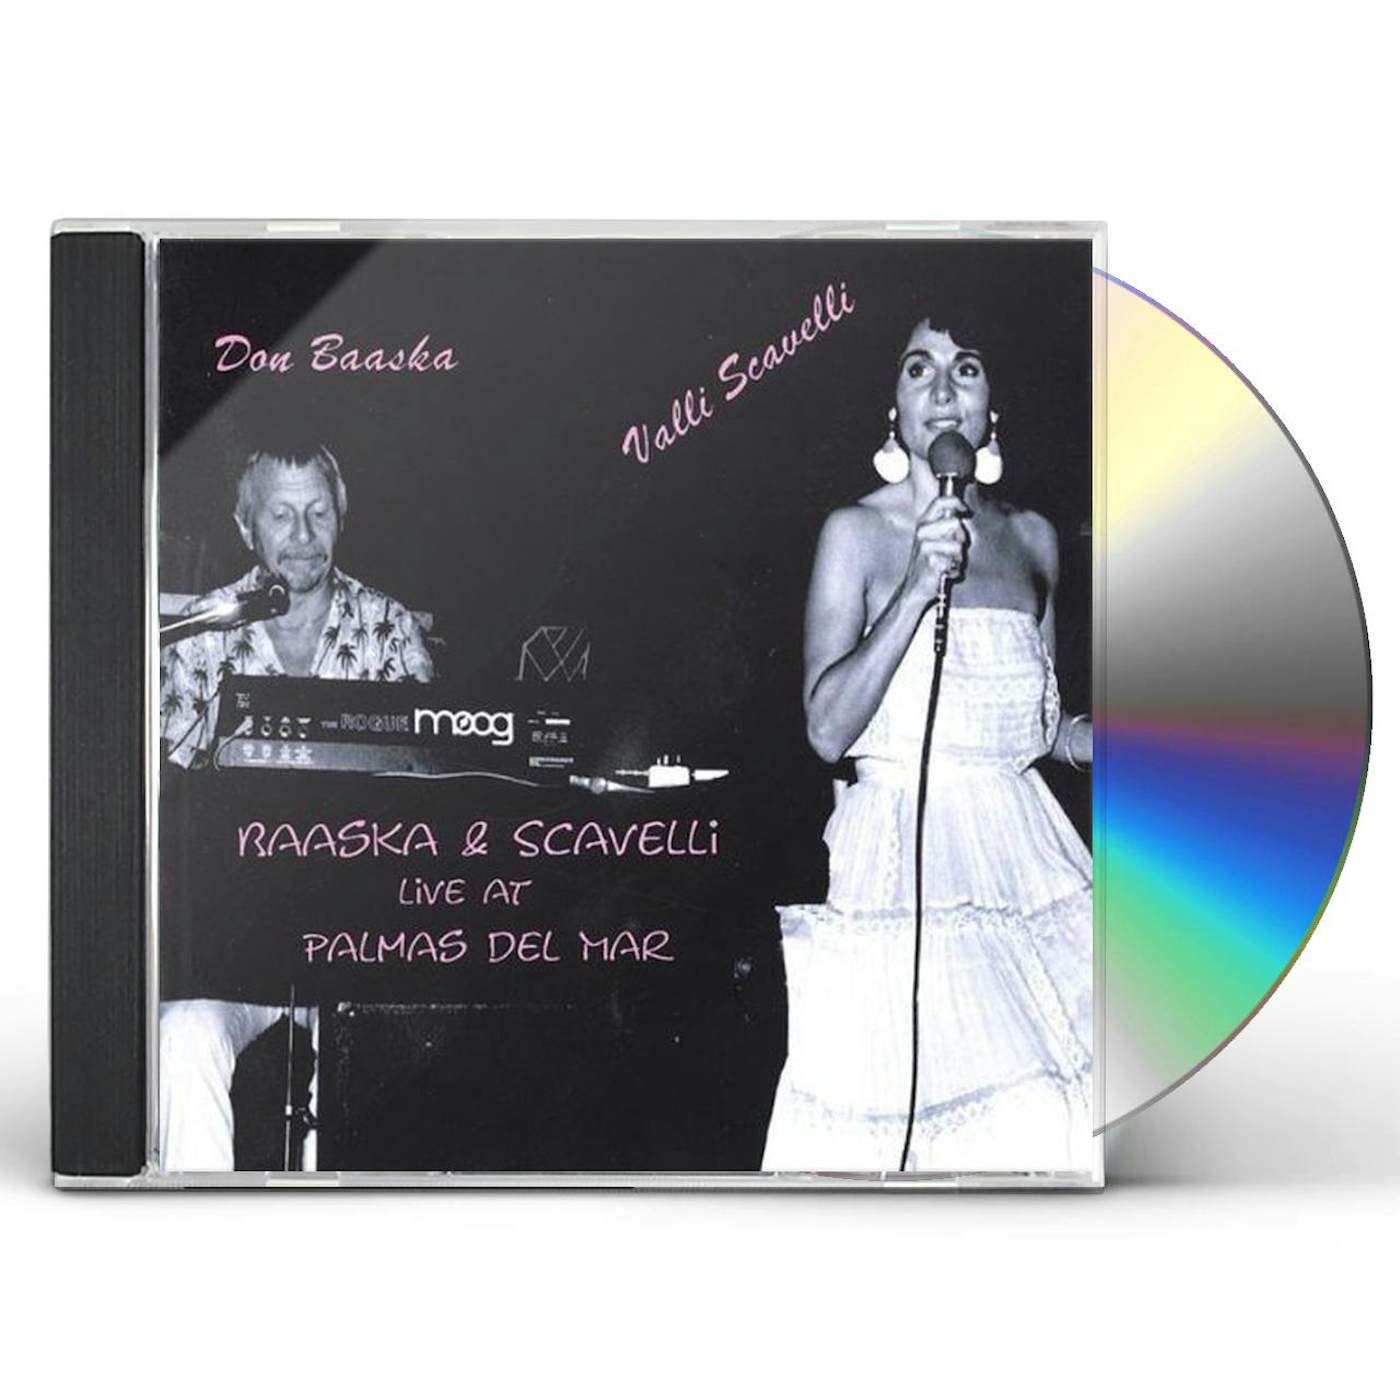 BAASKA & SCAVELLI LIVE AT PALMAS CD